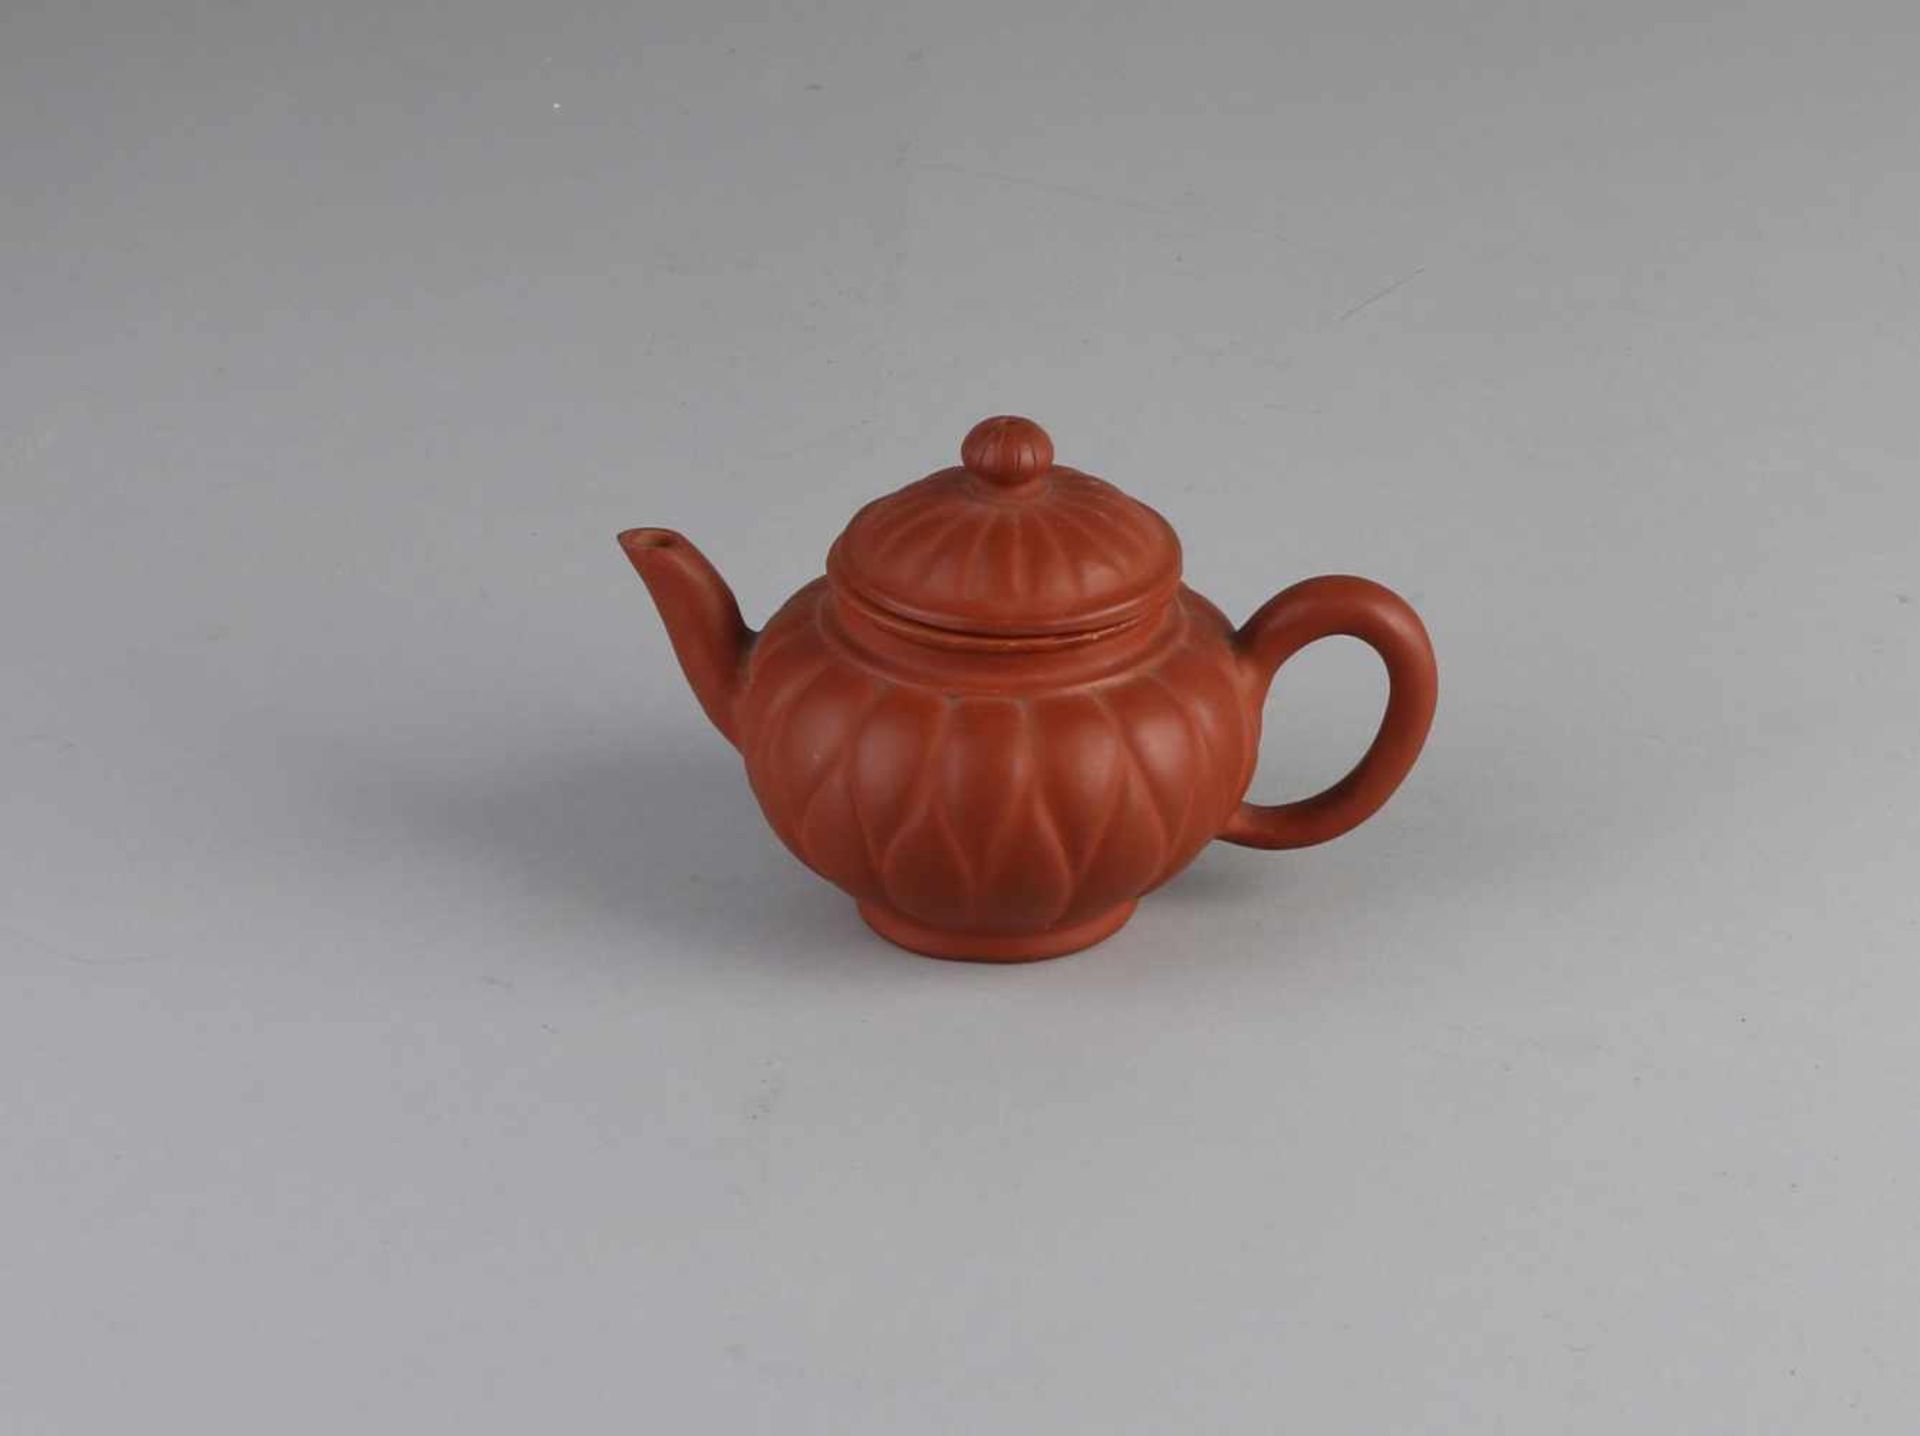 Chinesische Yixing Teekanne mit Bodenmarke. Größe: 8,5 x 14 x Ø 8,5 cm. In guter Kondition.